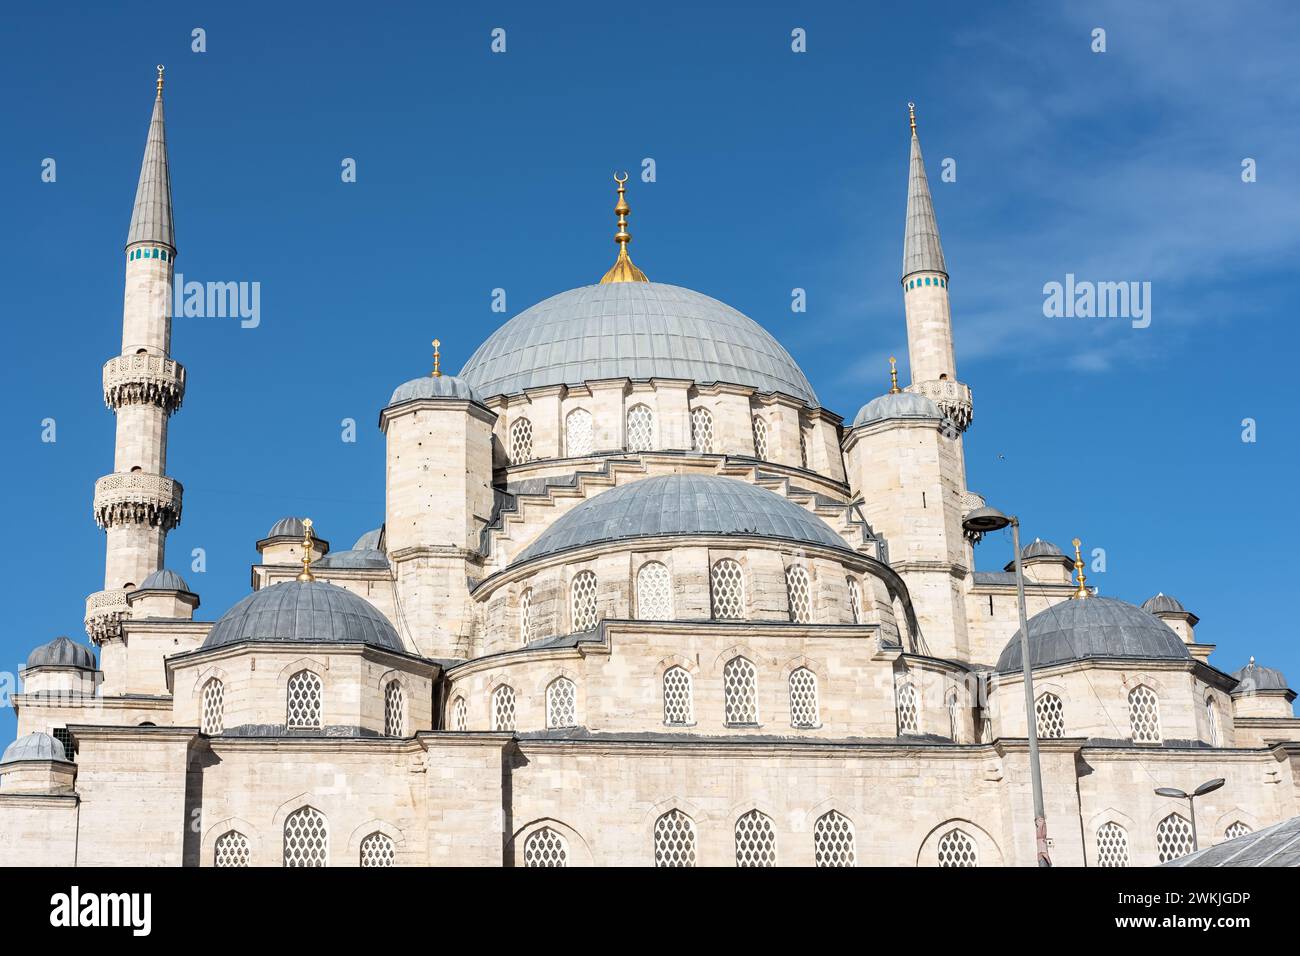 La Moschea Yeni Cami la nuova Moschea di Istanbul, Turchia. Cupole della moschea Yeni Cami in una giornata di sole. Foto di viaggio, spazio per copiare il testo Foto Stock